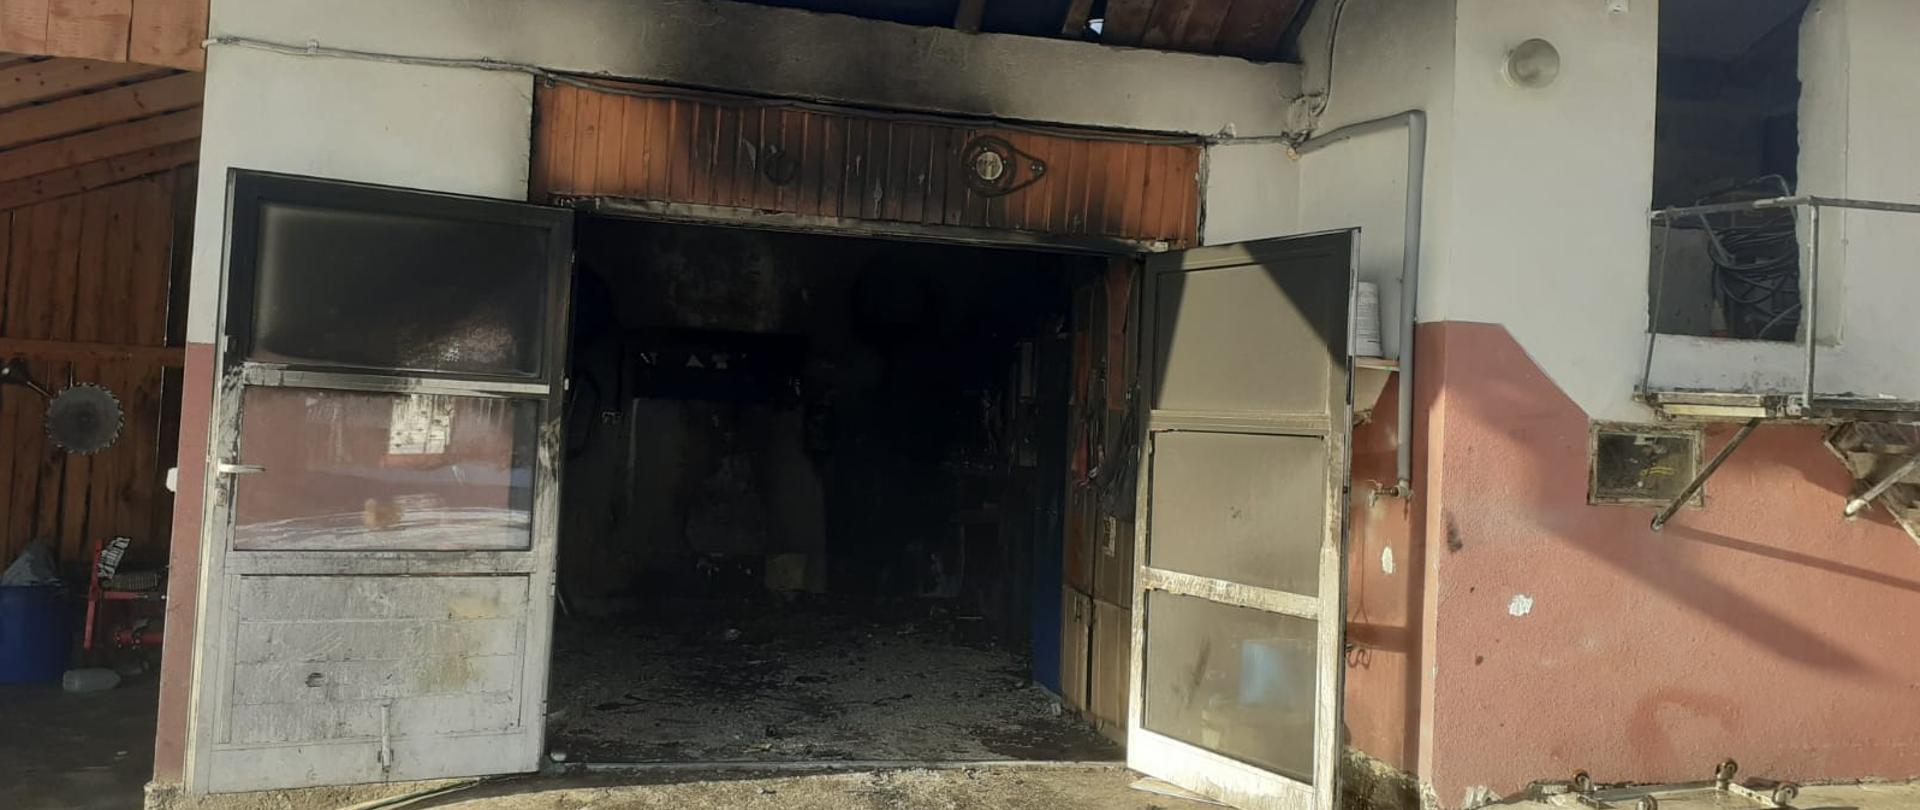 Widok otwartych drzwi do garażu w którym powstał pożar.